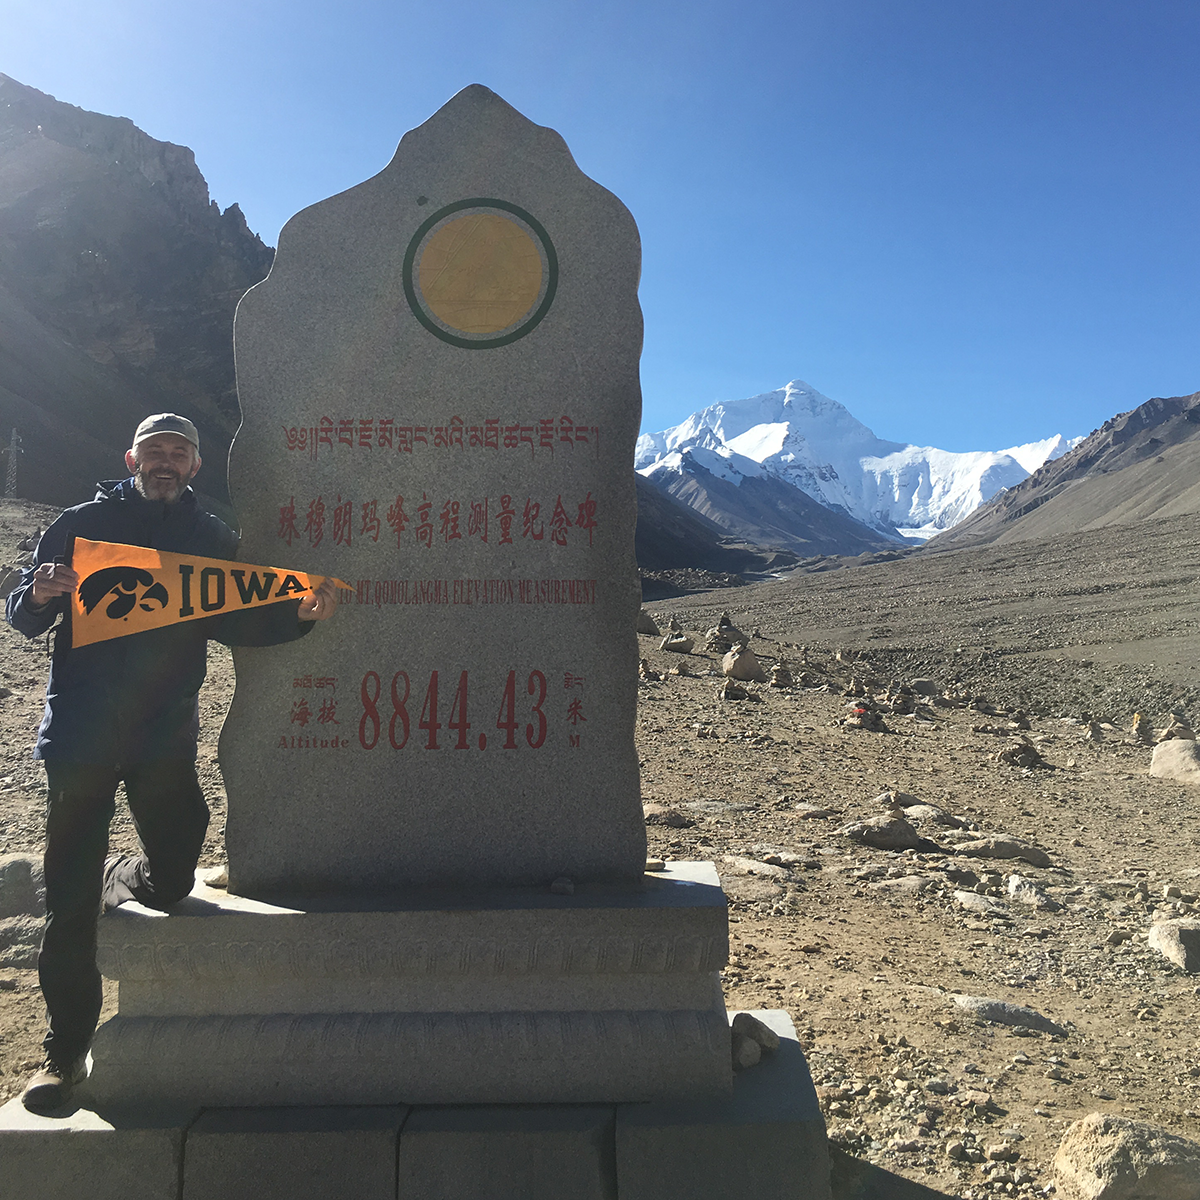 David Peate on Mount Everest